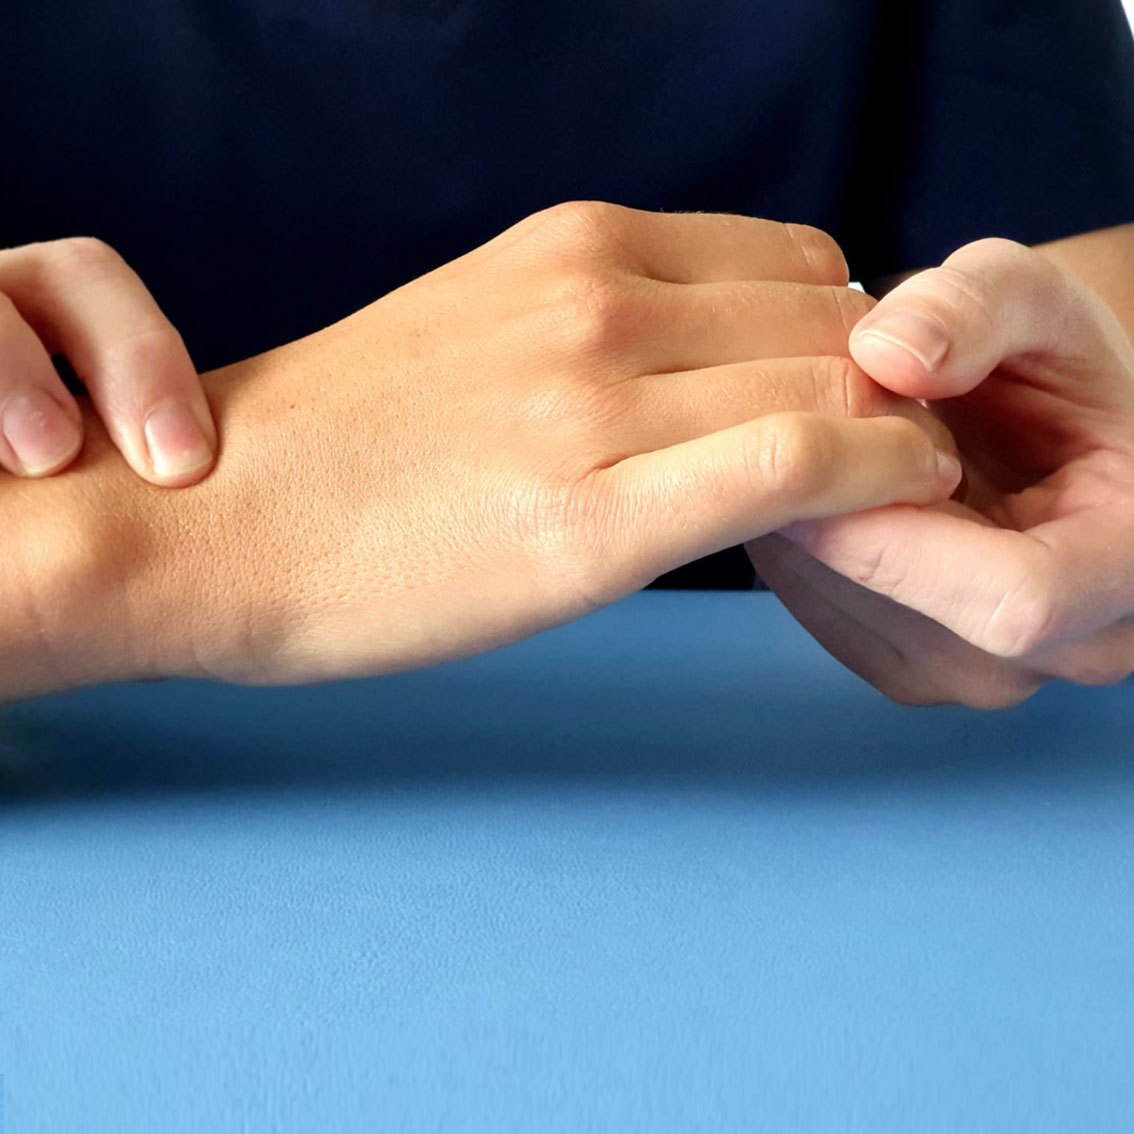 Kyste synovial, pathologie fréquente de la main